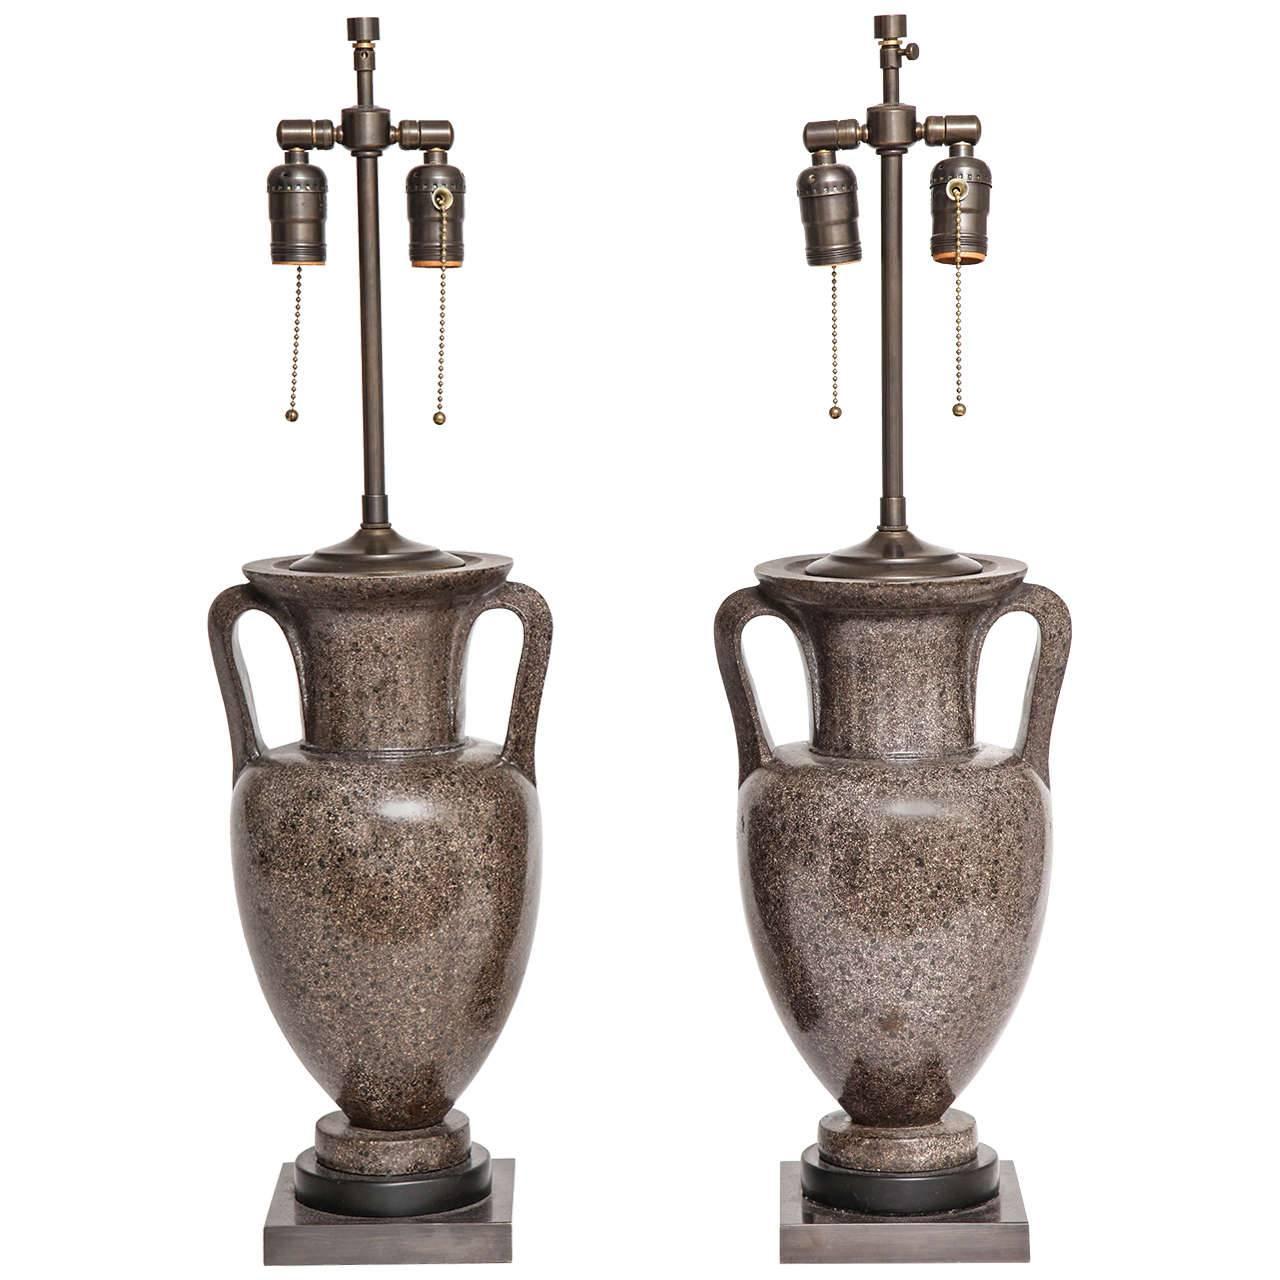 Paire d'urnes en porphyre Grand Tour italiennes transformées en lampes, début des années 1800